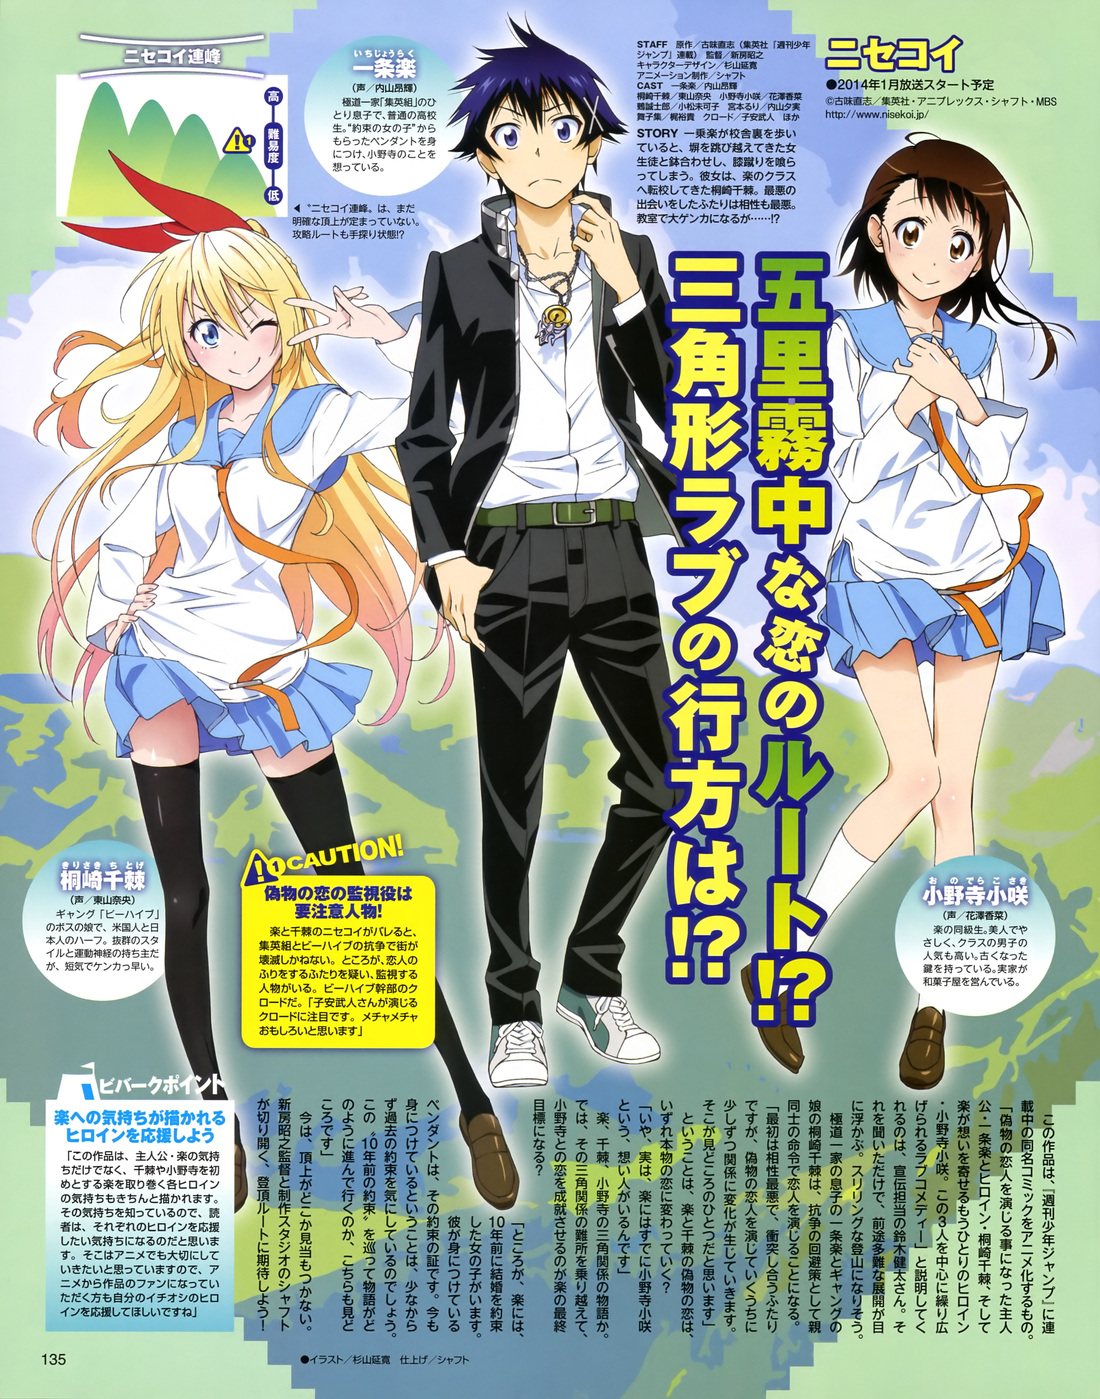 Nisekoi Anime Airing January 2014 pic 6